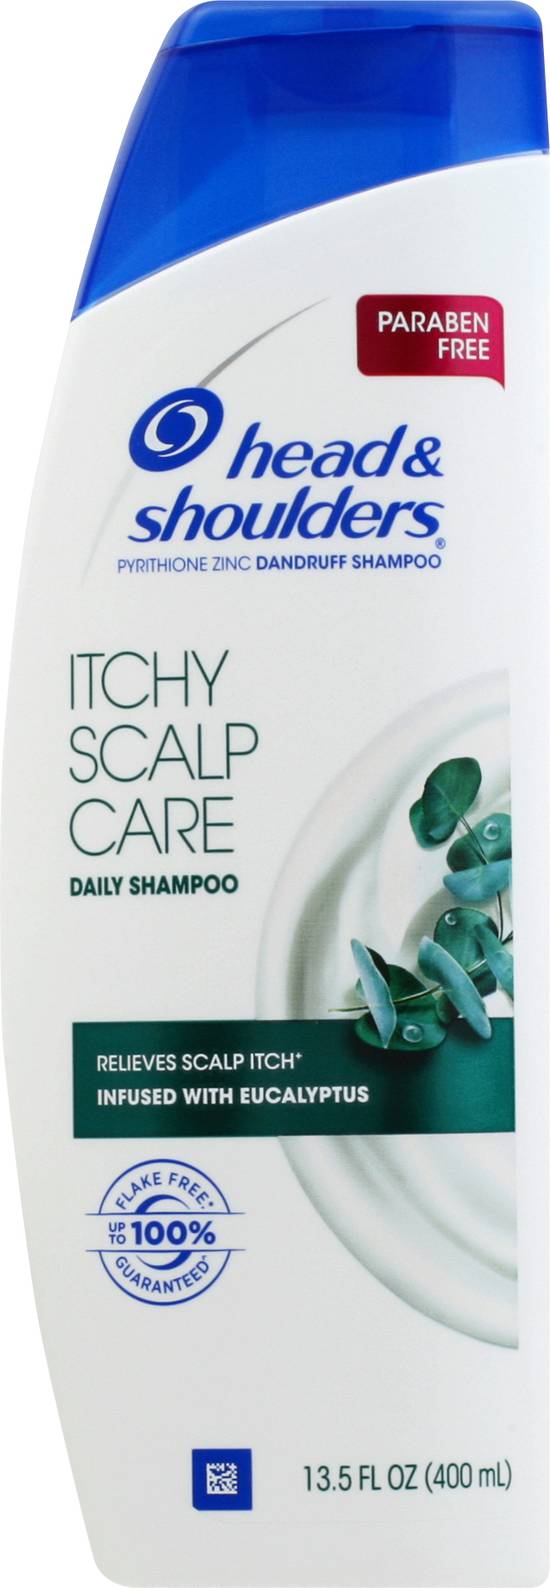 Head & Shoulders Itchy Scalp Care Shampoo